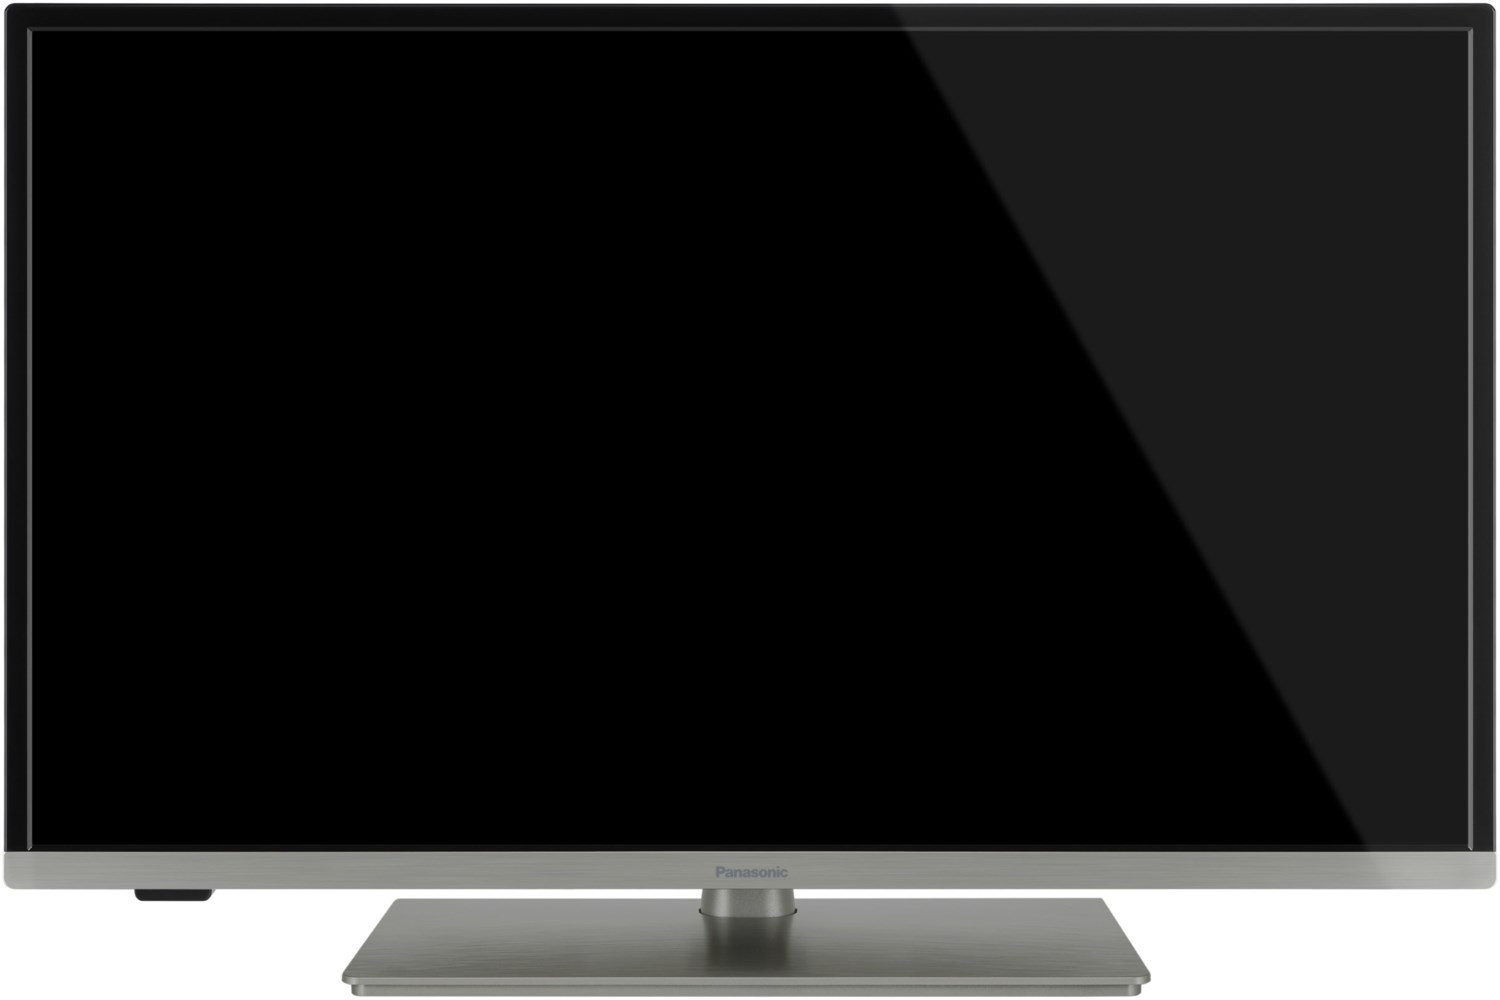 TX-32JSW354 80 cm (32) LCD-TV mit LED-Technik Inox-Silver / F